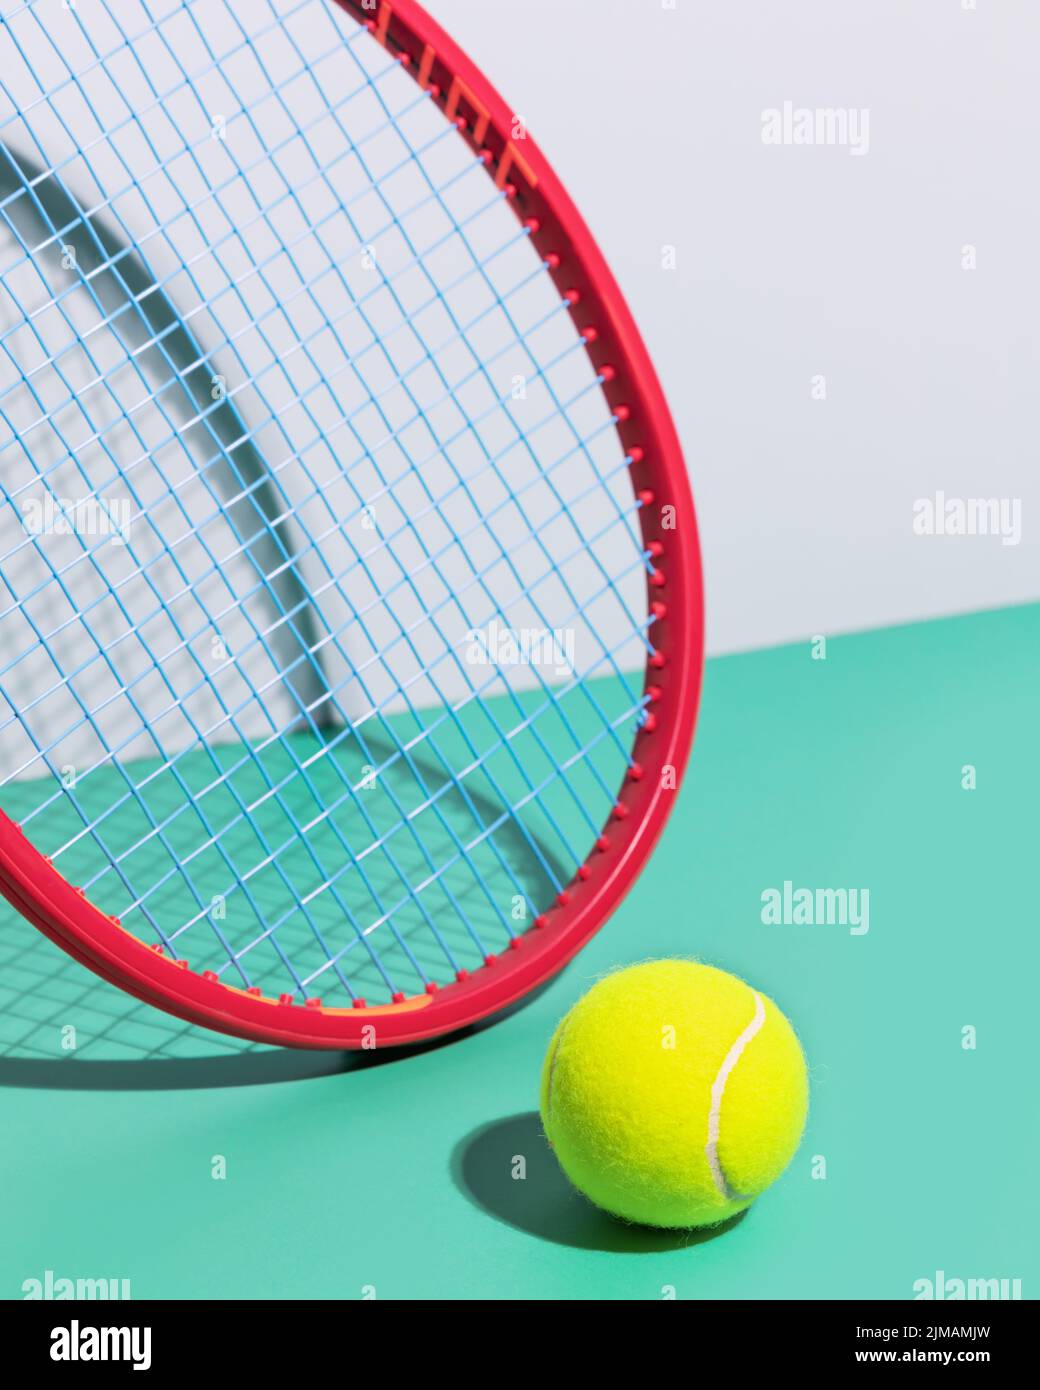 Composition de tennis avec raquette de tennis rouge et jaune, balle de tennis sur fond bleu. Compétition de tennis. Mise au point sélective, gros plan Banque D'Images